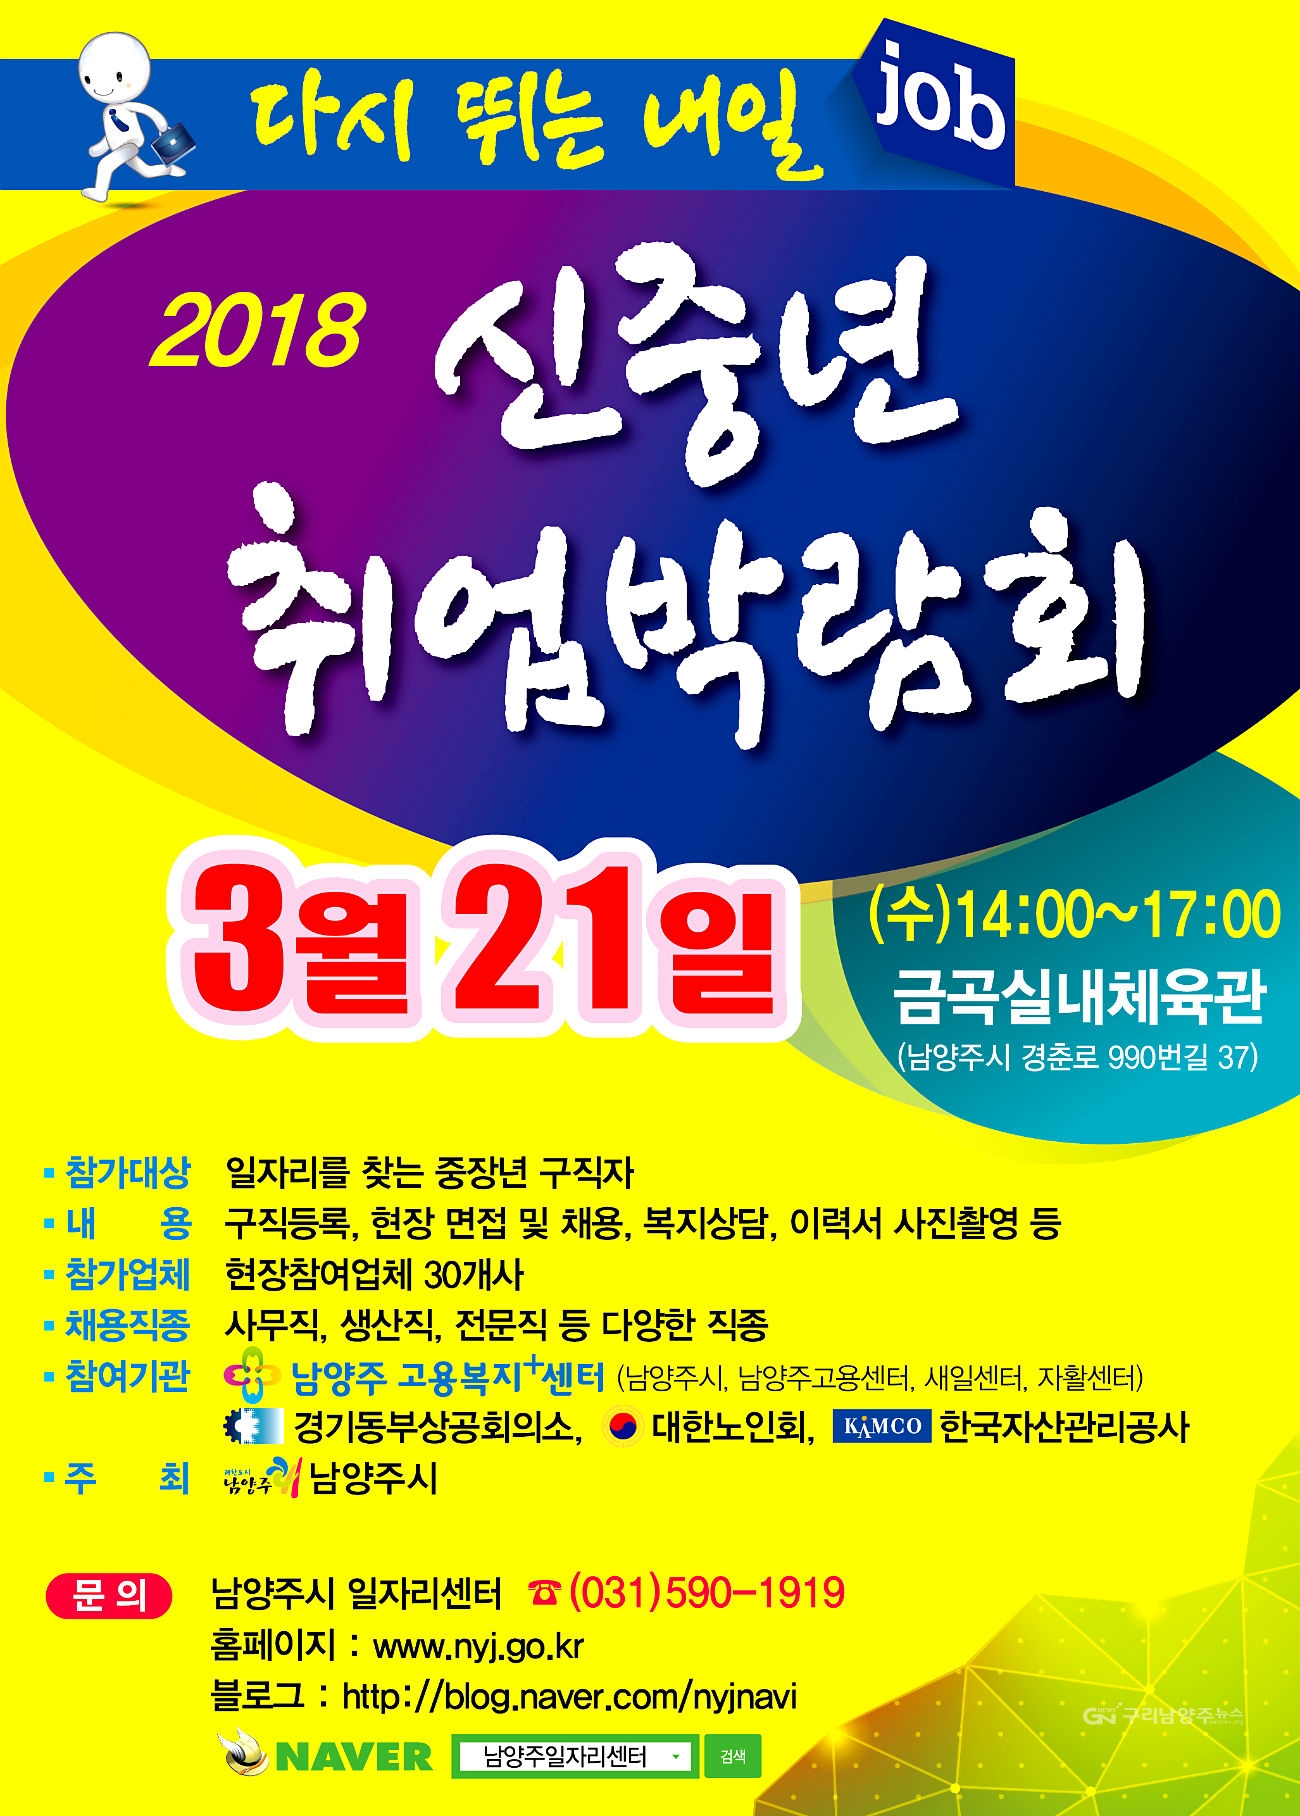 ‘다시 뛰는 내일(Job) 2018 신(新)중년 취업박람회’ 포스터